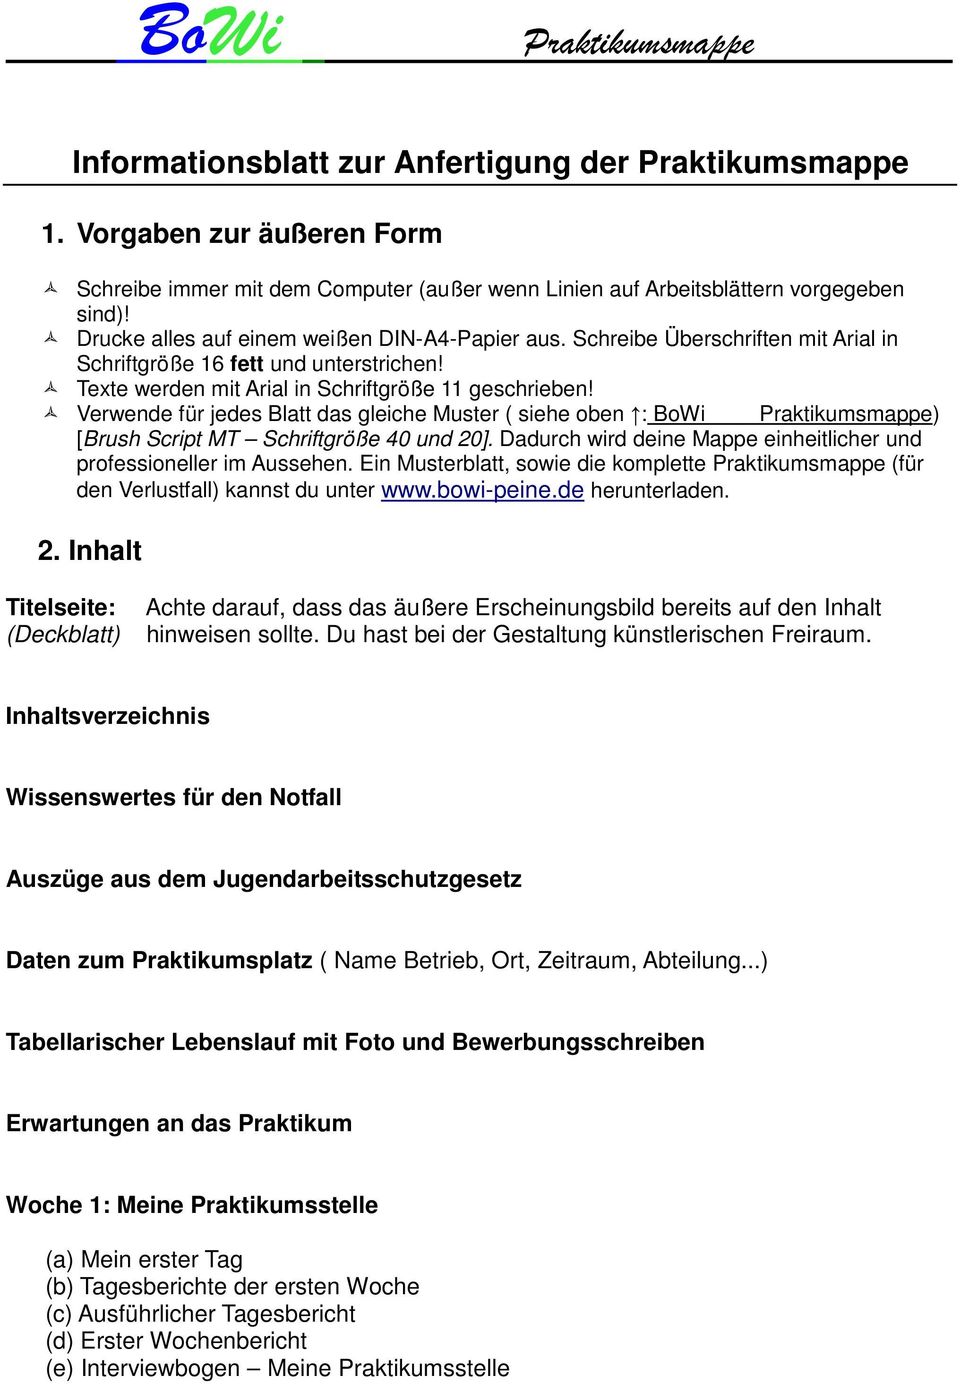 Informationsblatt Zur Anfertigung Der Praktikumsmappe Pdf